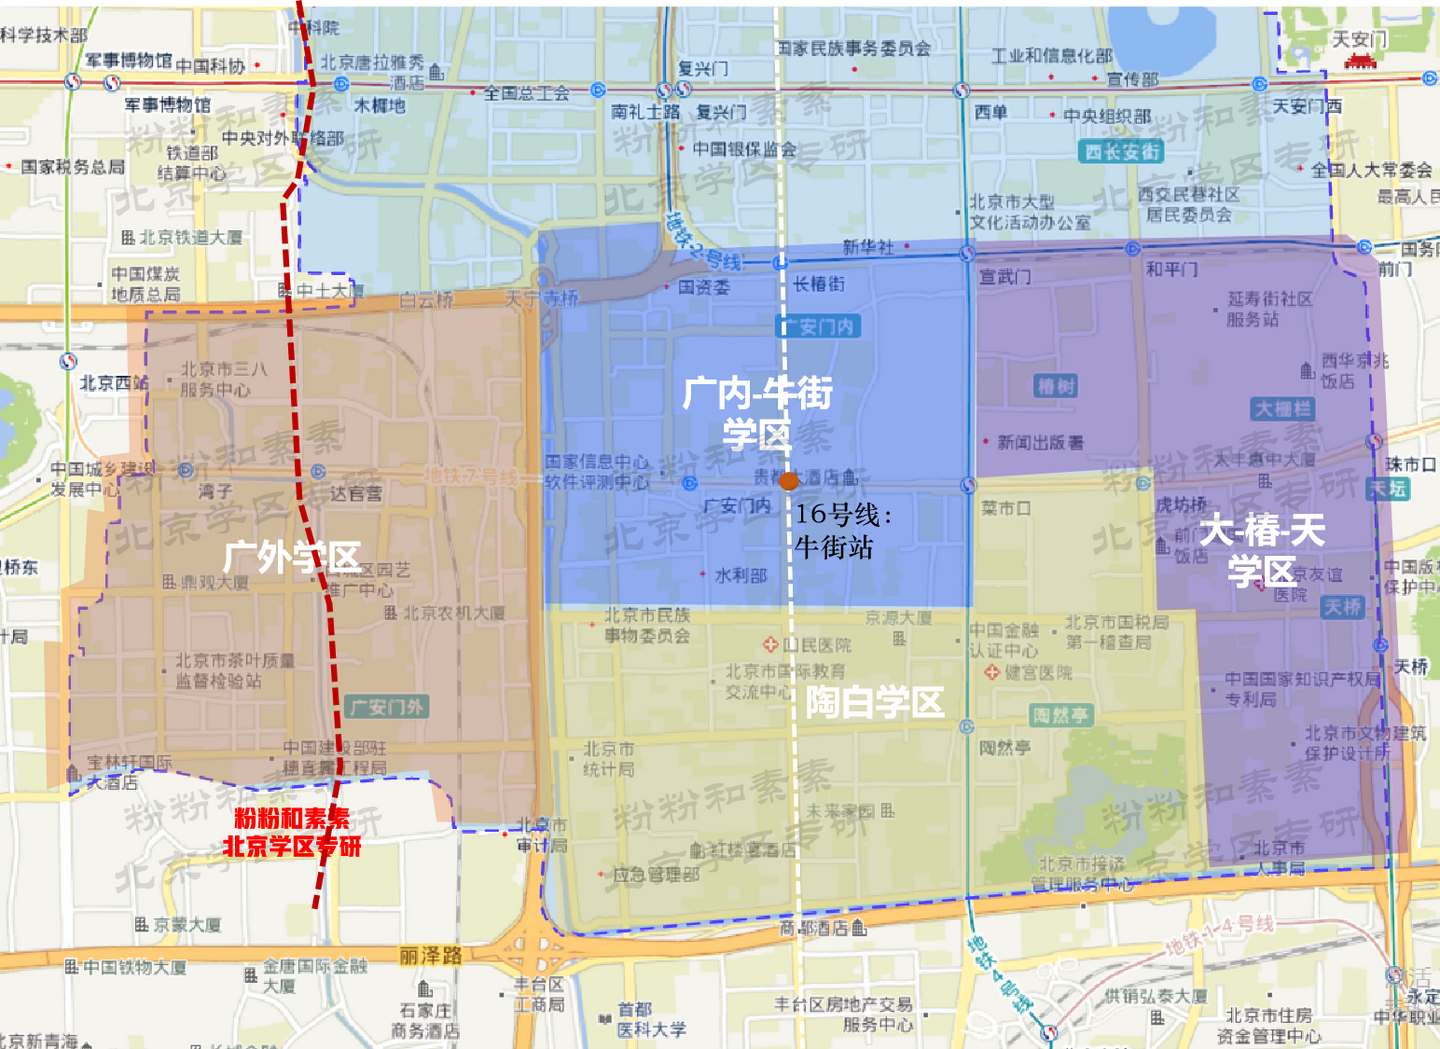 北京西城学区划分,街道地图 学区划分